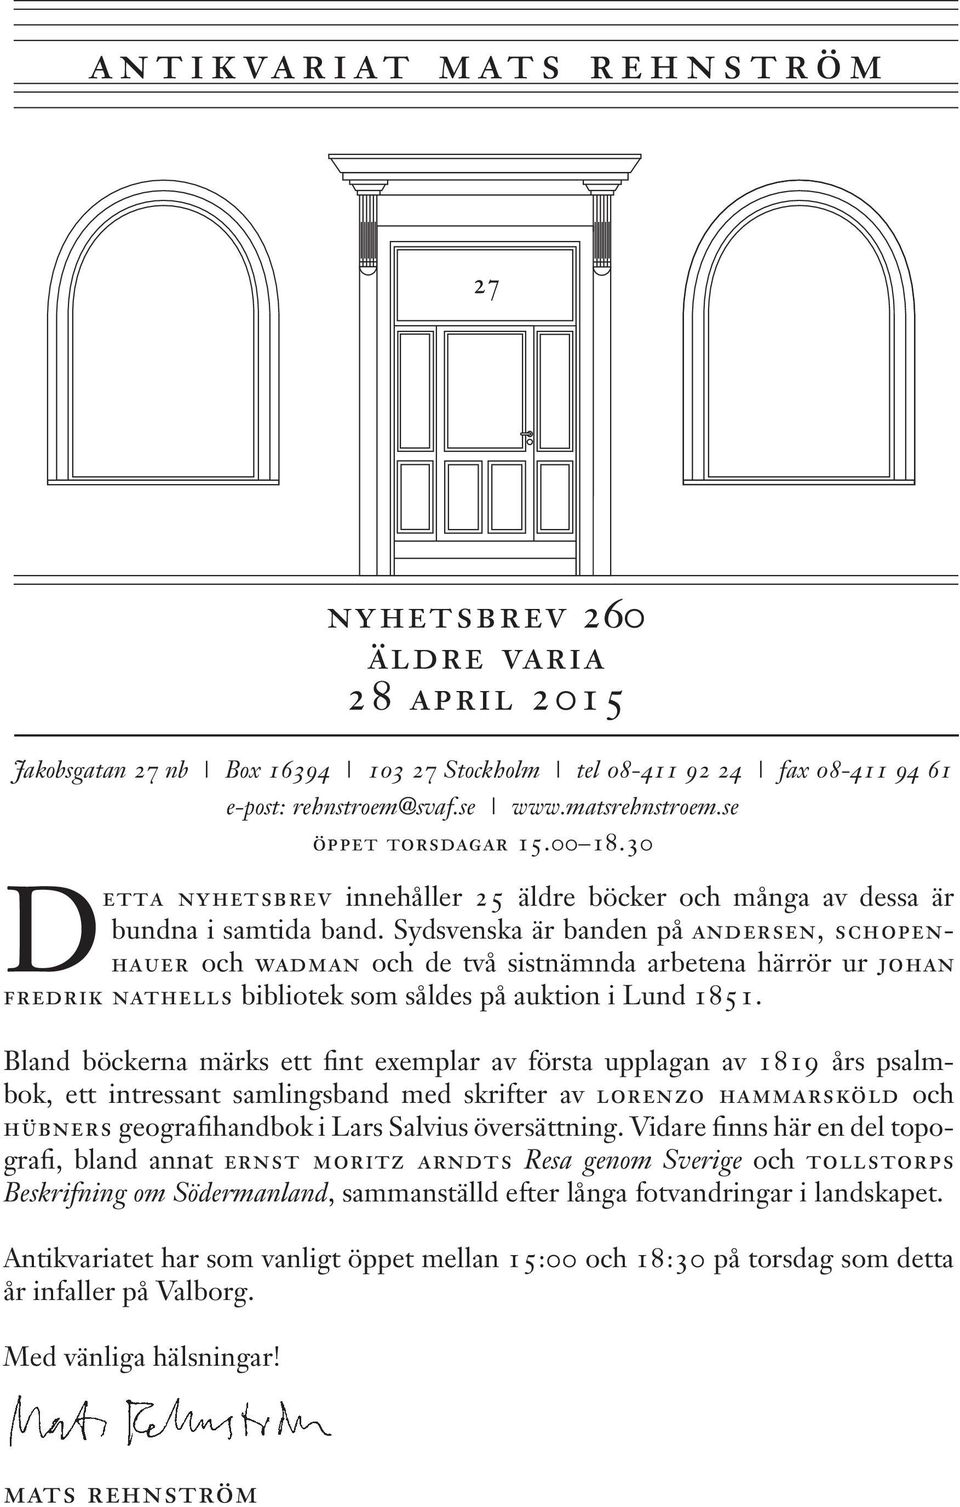 Sydsvenska är banden på andersen, schopenhauer och wadman och de två sistnämnda arbetena härrör ur johan fredrik nathells bibliotek som såldes på auktion i Lund 1851.